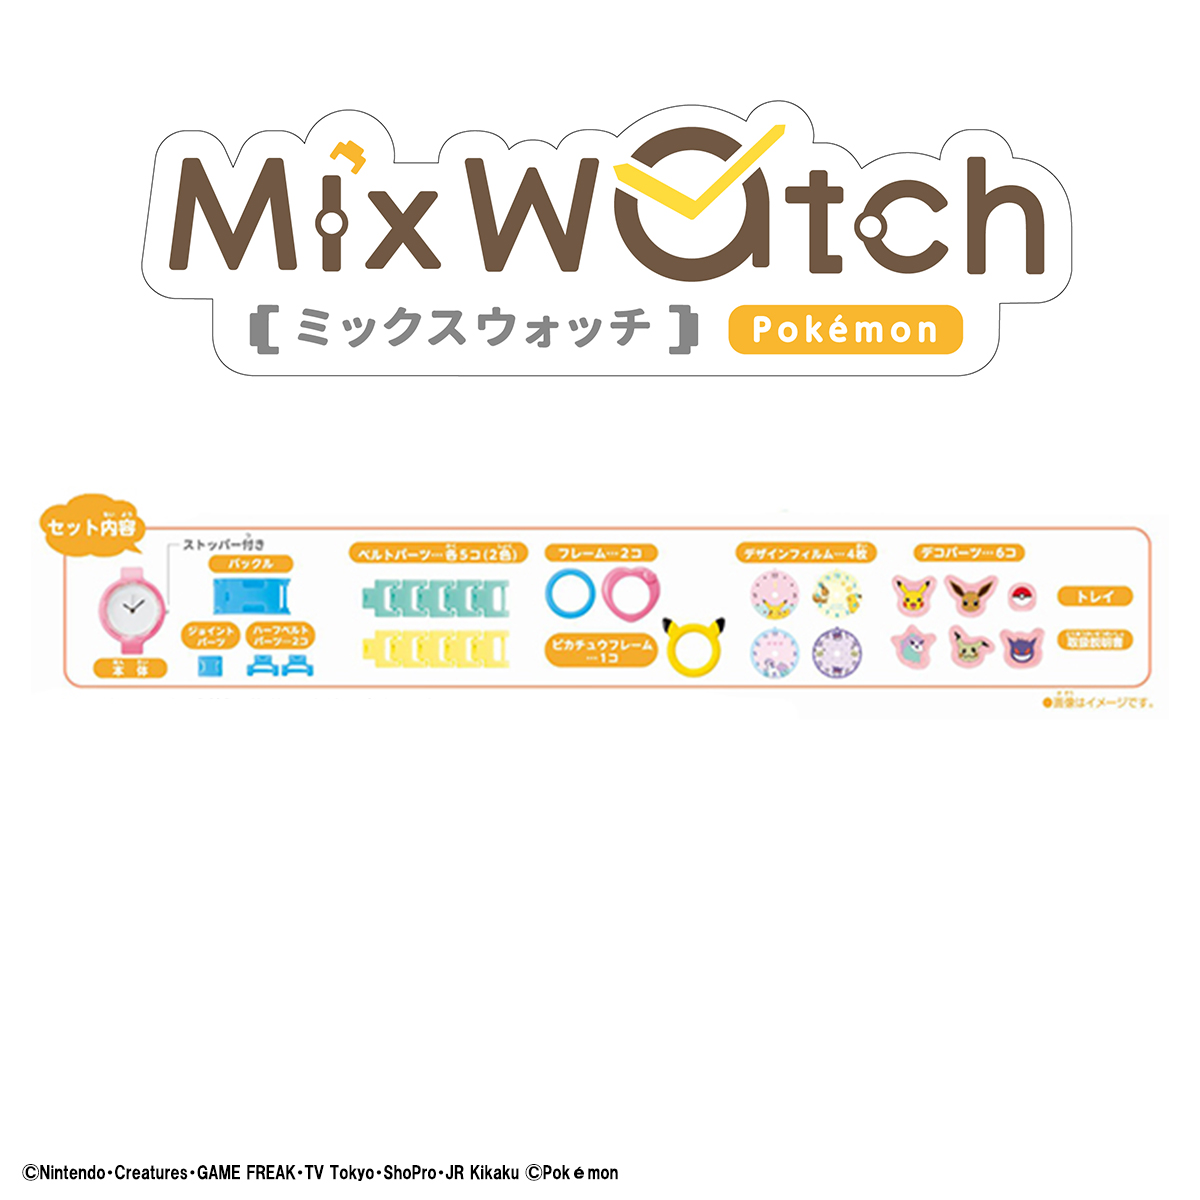  MixWatch(ミックスウォッチ) ポケットモンスター